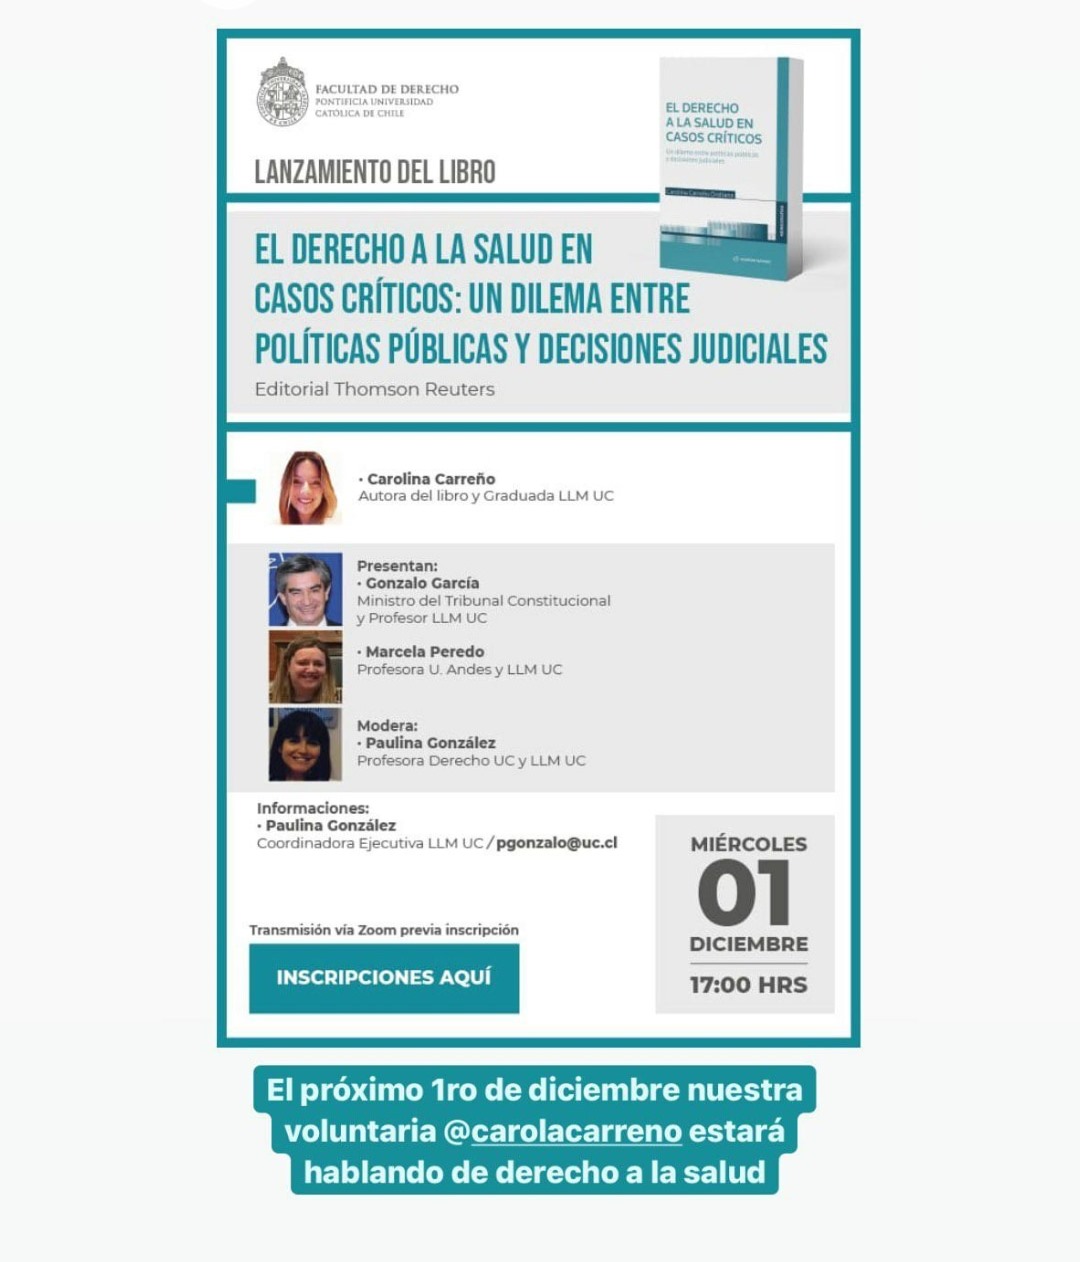 Lanzamiento del libro de la abogada Carolina Carreño: "El derecho a la salud en casos críticos: un dilema entre políticas públicas y decisiones judiciales".